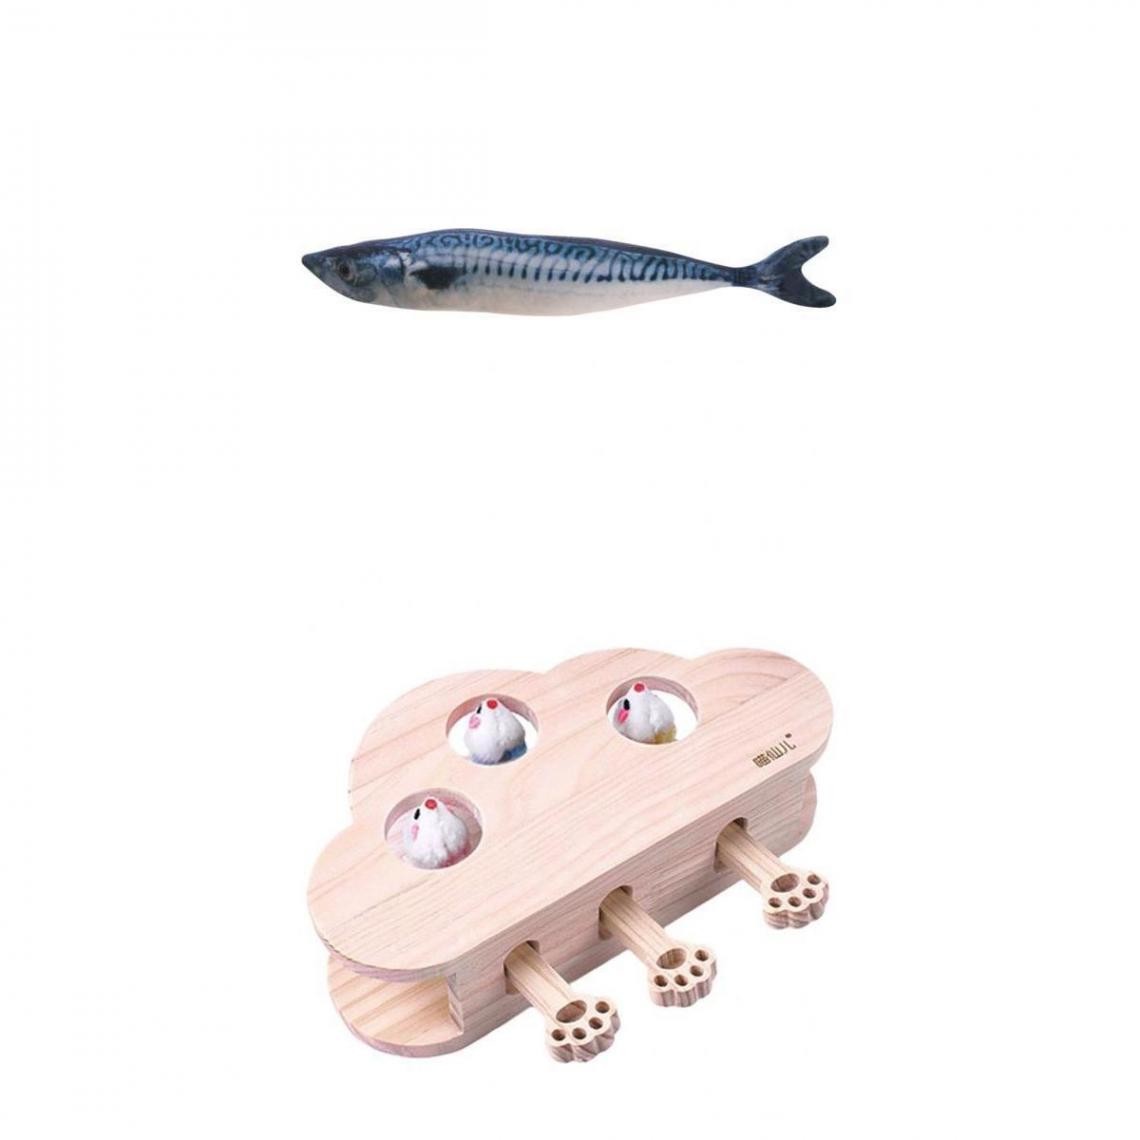 marque generique - jouet poisson chat carpe saumon Maquereau - Jouet pour chien